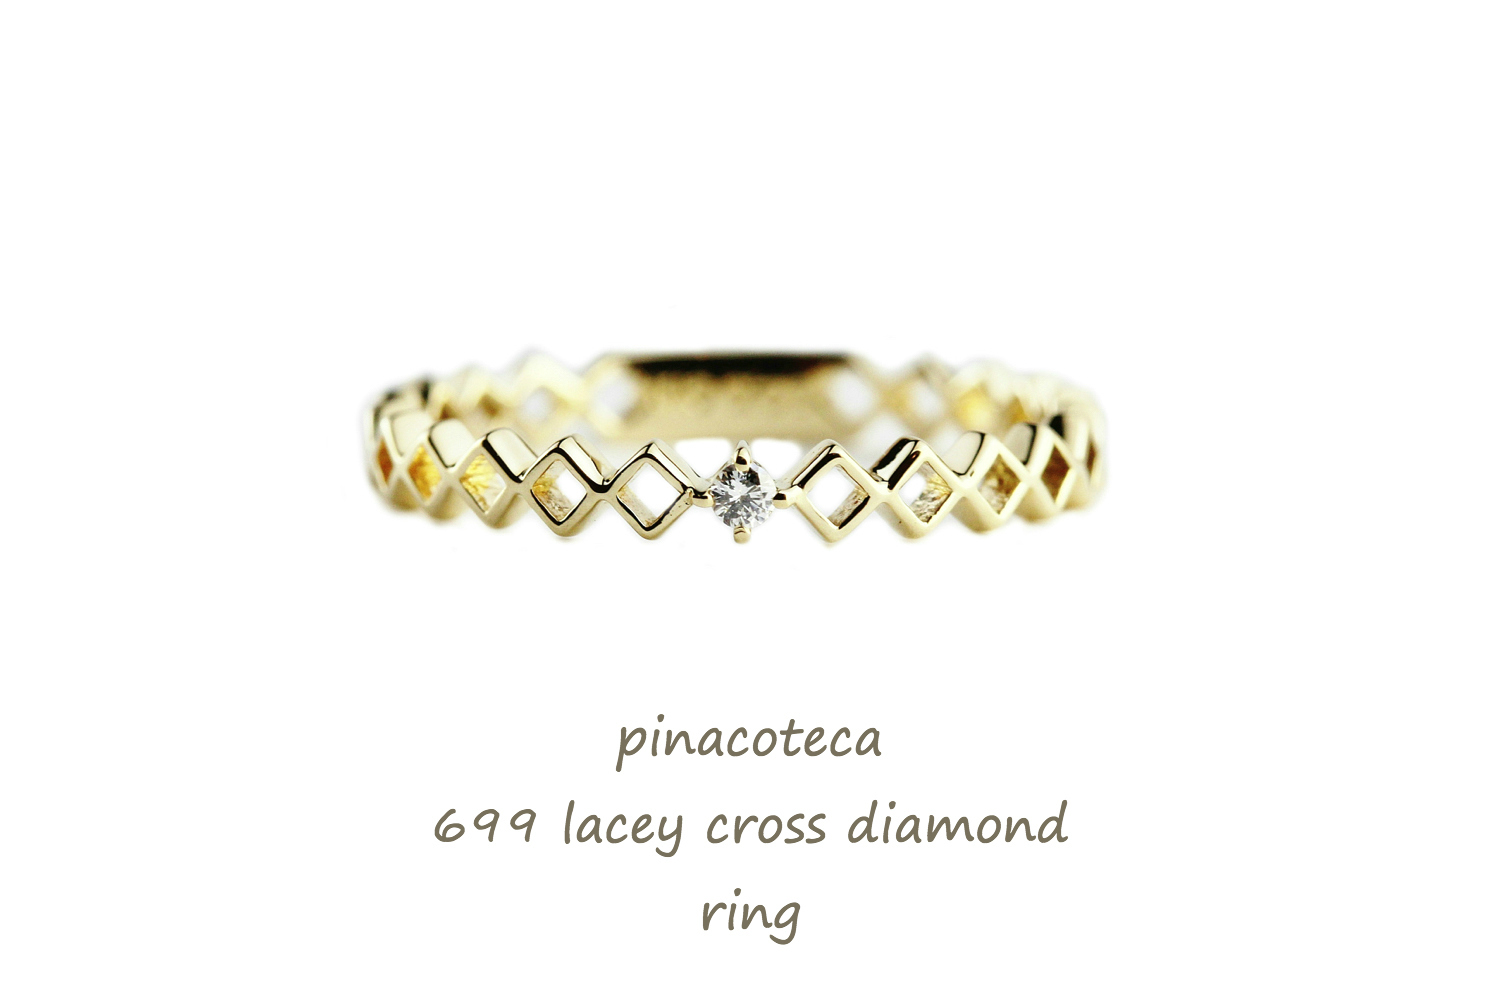 ピナコテーカ 699 レーシー クロス 一粒ダイヤモンド 華奢リング ピンキーリング 18金,pinacoteca Lacey Cross Diamond Ring K18